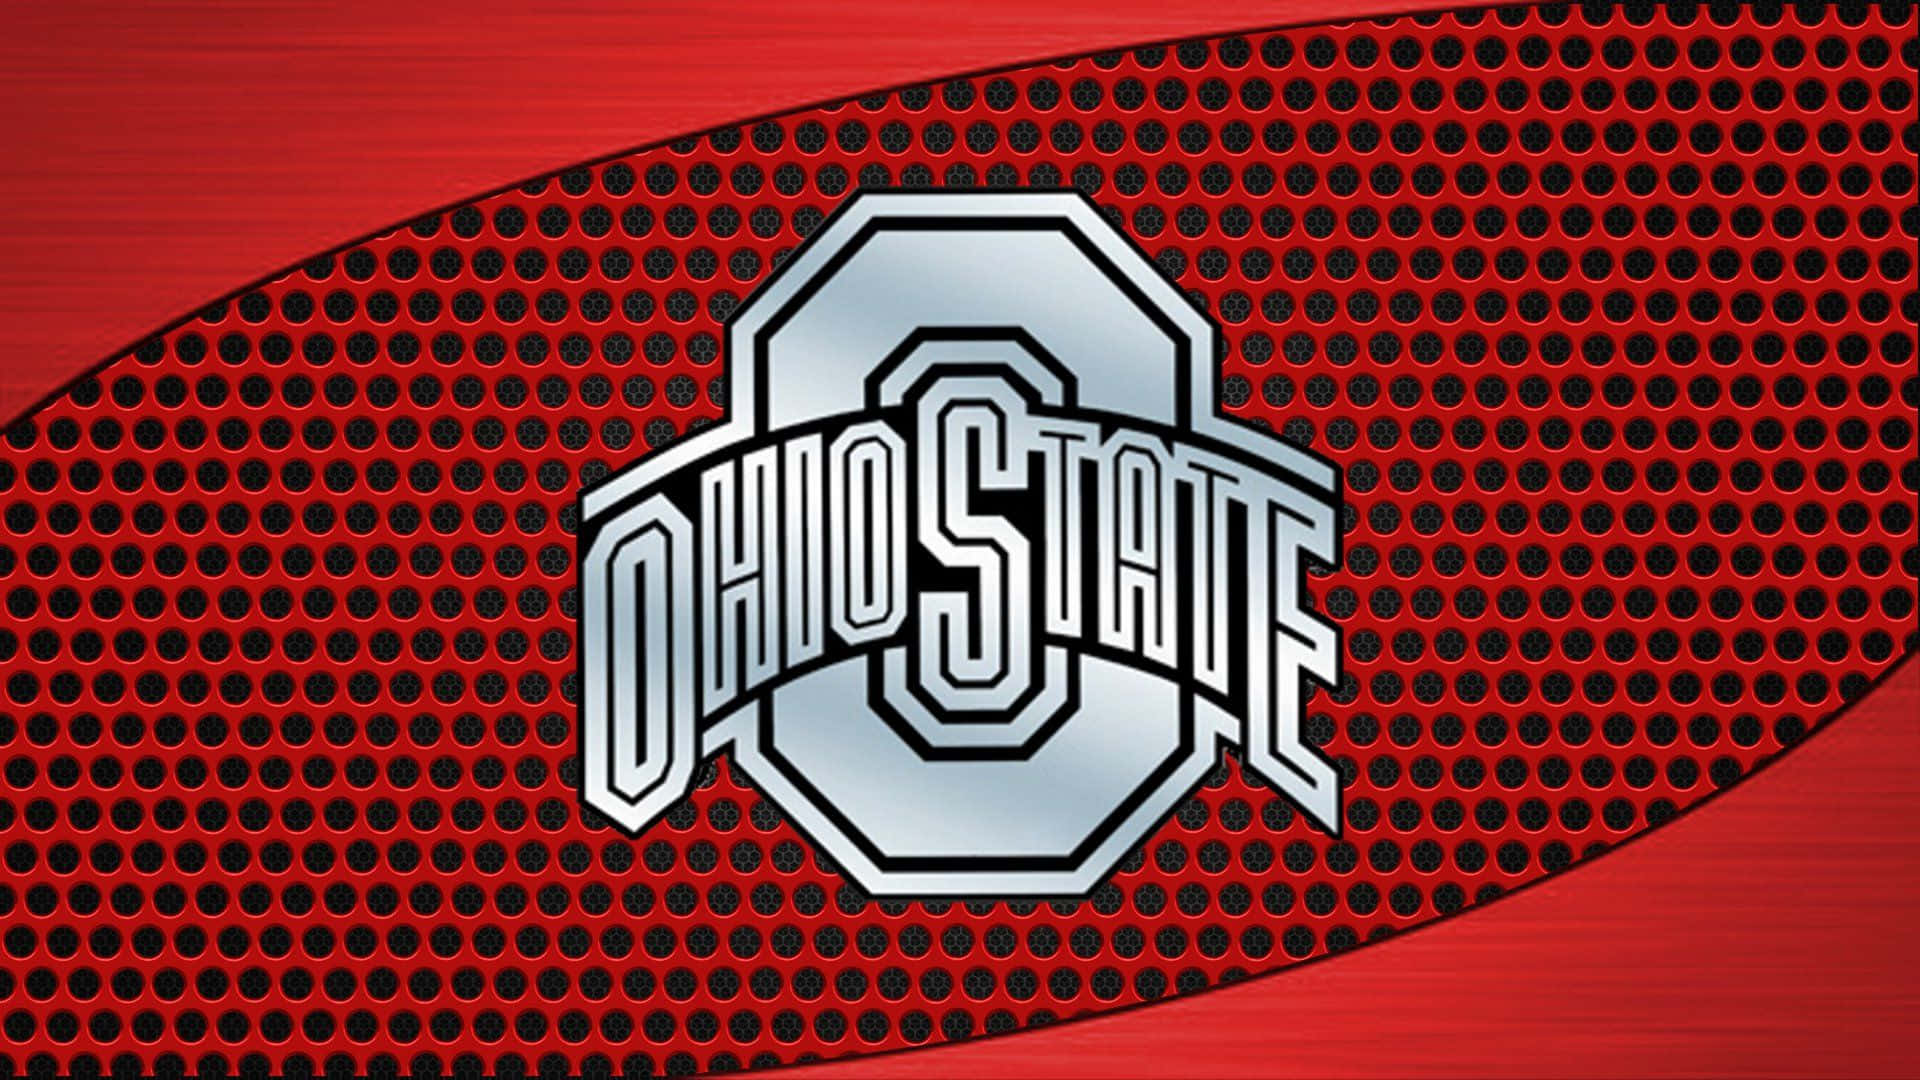 Logotipoplateado De Ohio State En Una Superficie Con Perforaciones. Fondo de pantalla